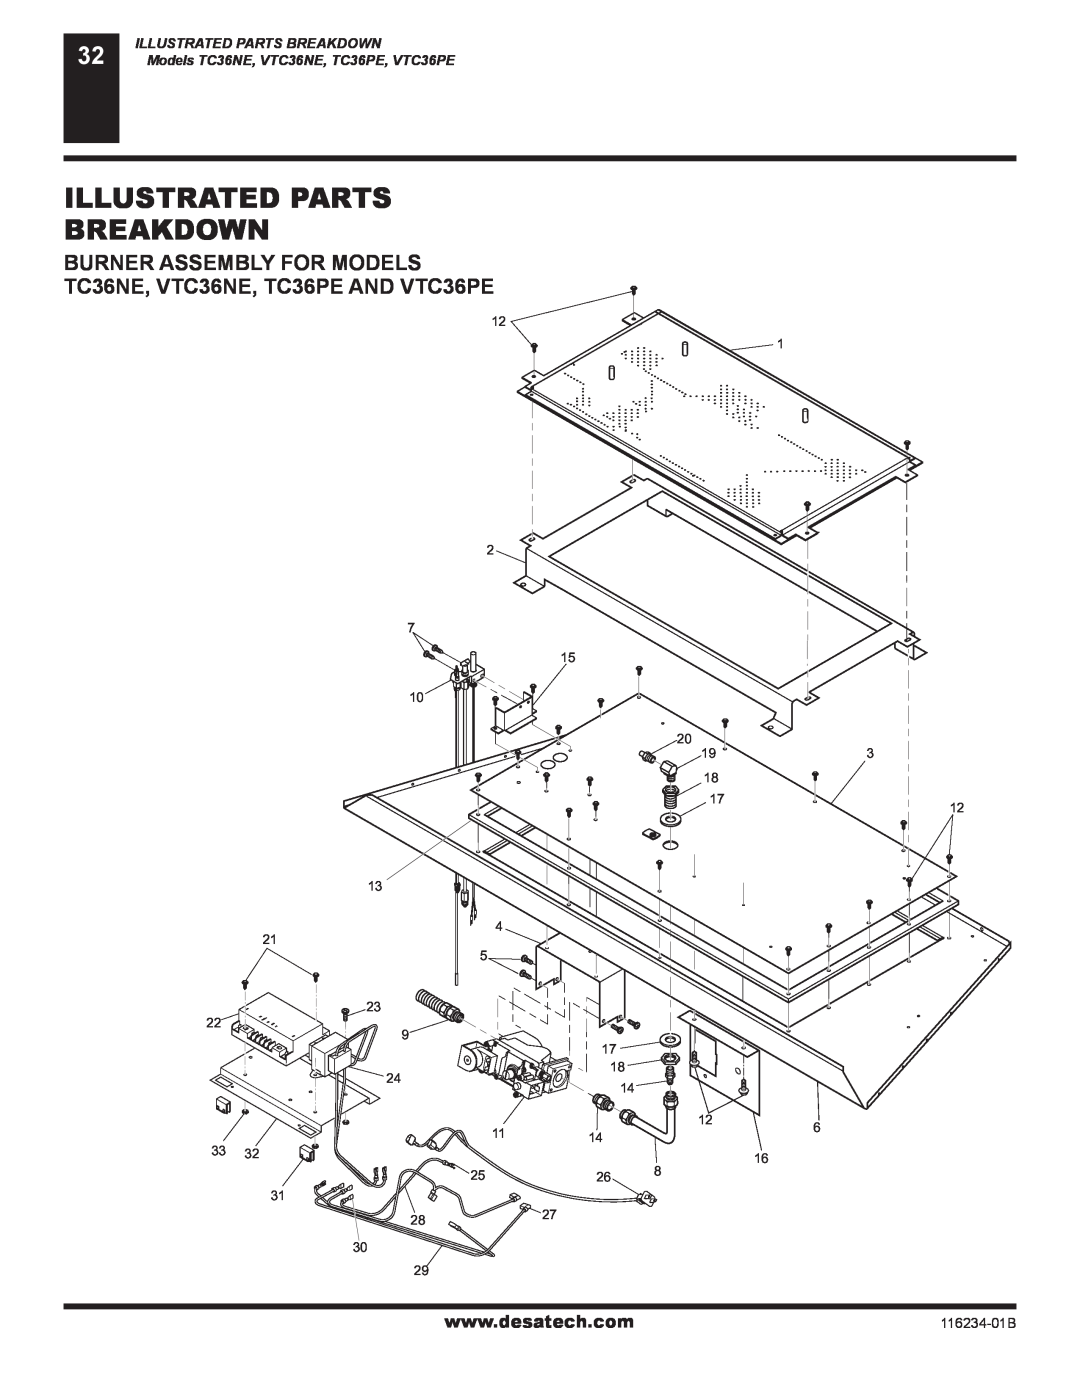 Desa (V)TC36PE Illustrated Parts Breakdown, Burner Assembly For Models, TC36NE, VTC36NE, TC36PE AND VTC36PE, 116234-01B 